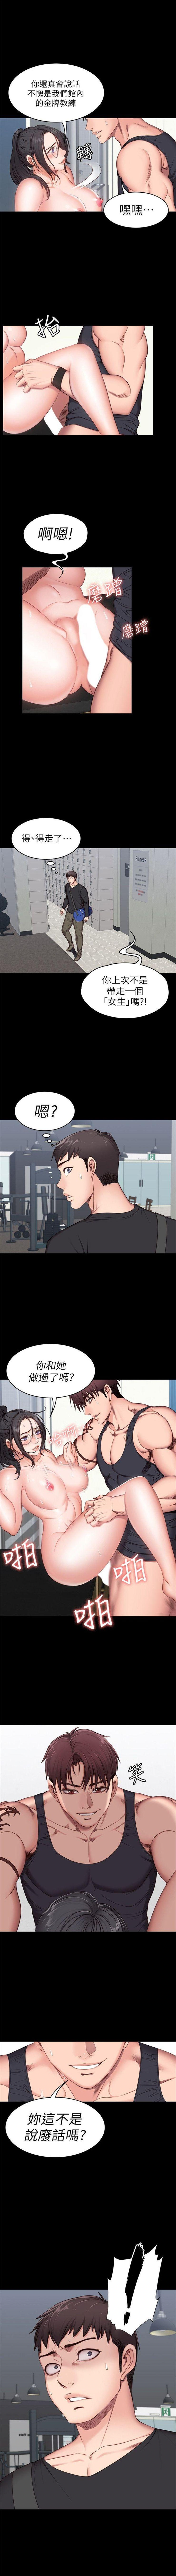 健身教练 1-27 中文翻译 （更新中） 30